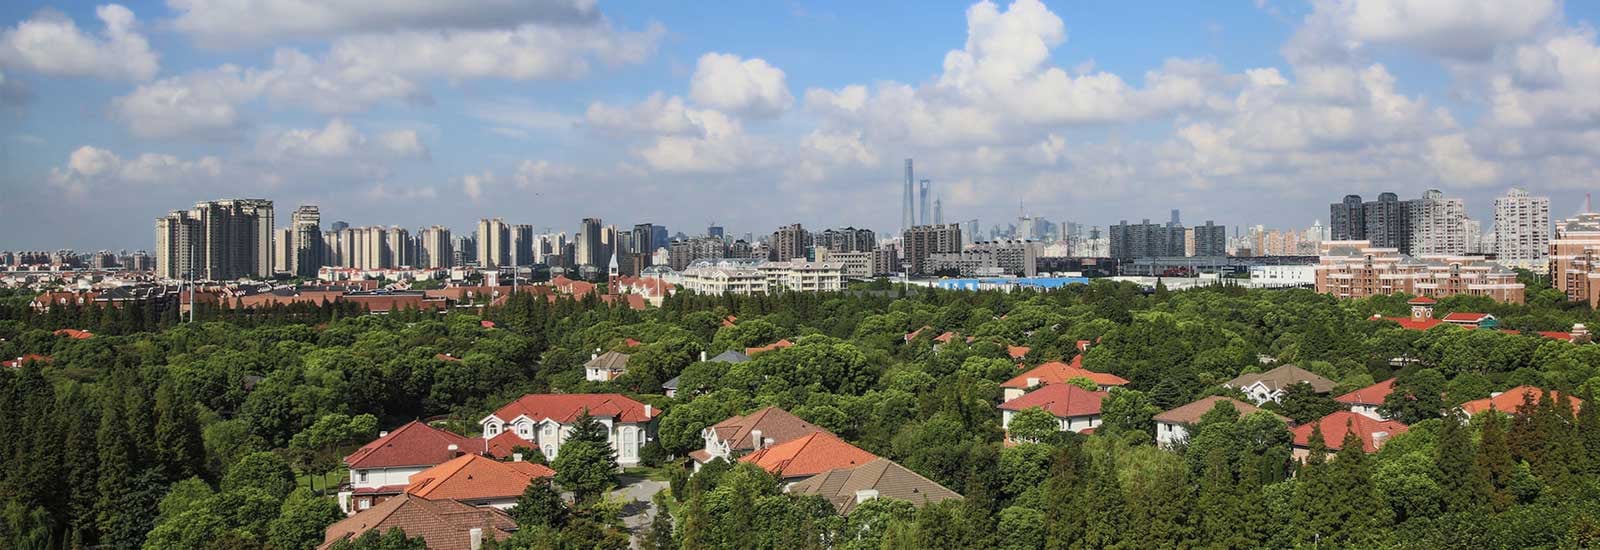 jinqiao-shanghai-skyline